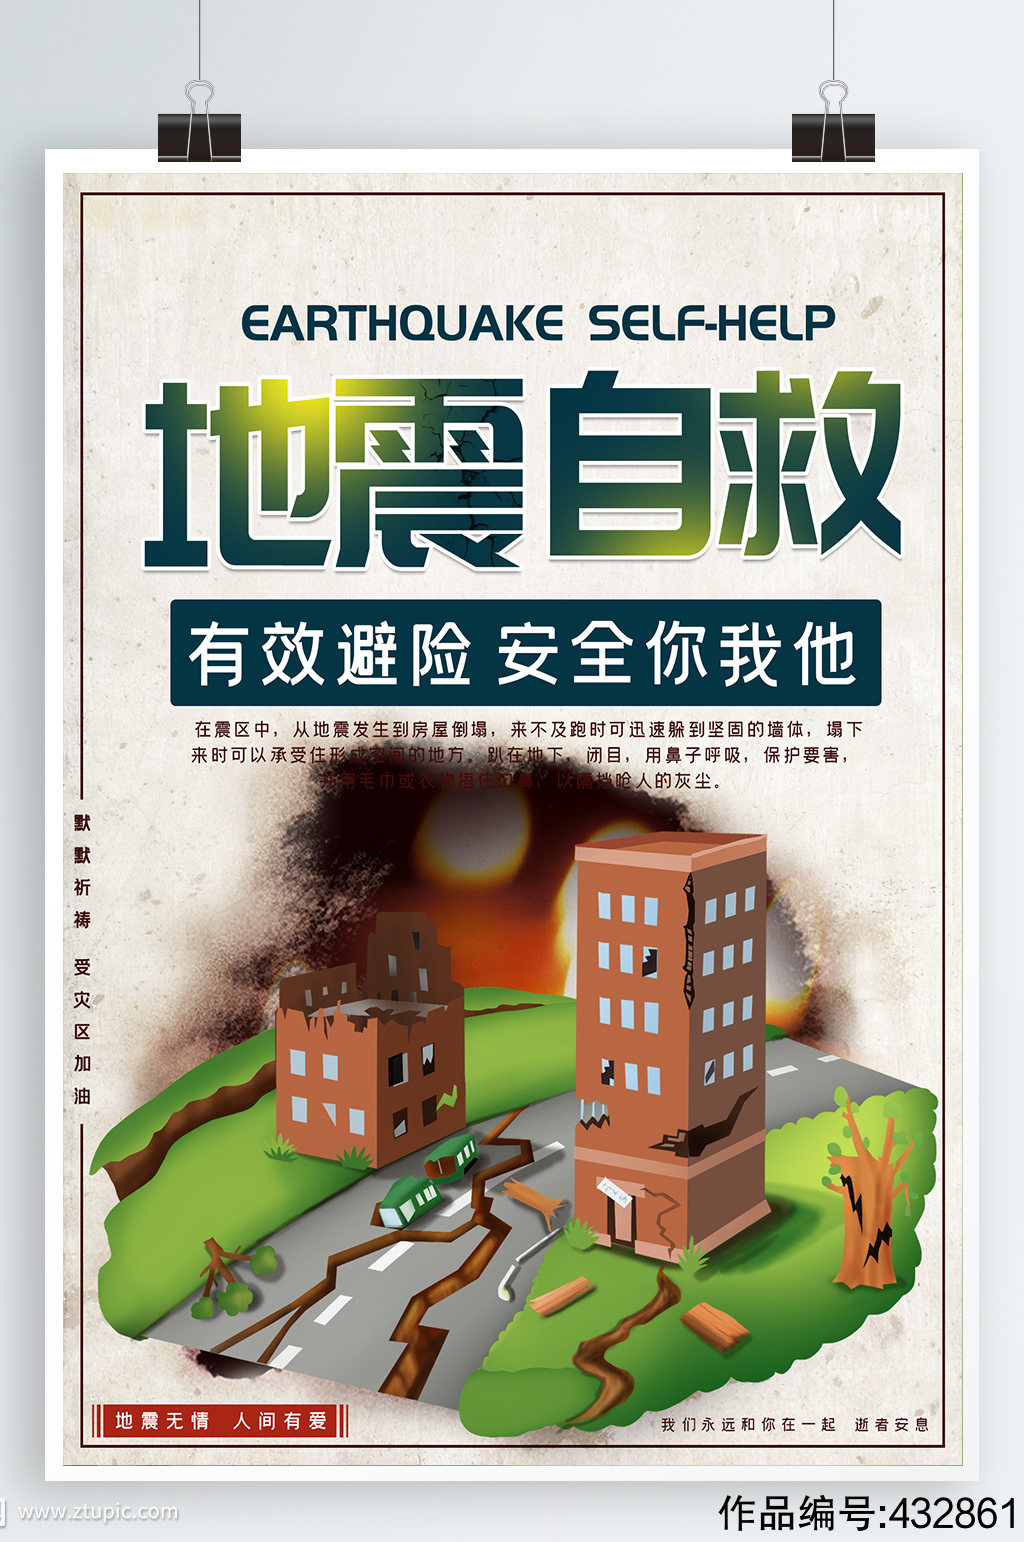 防震减灾地震自救常识海报素材